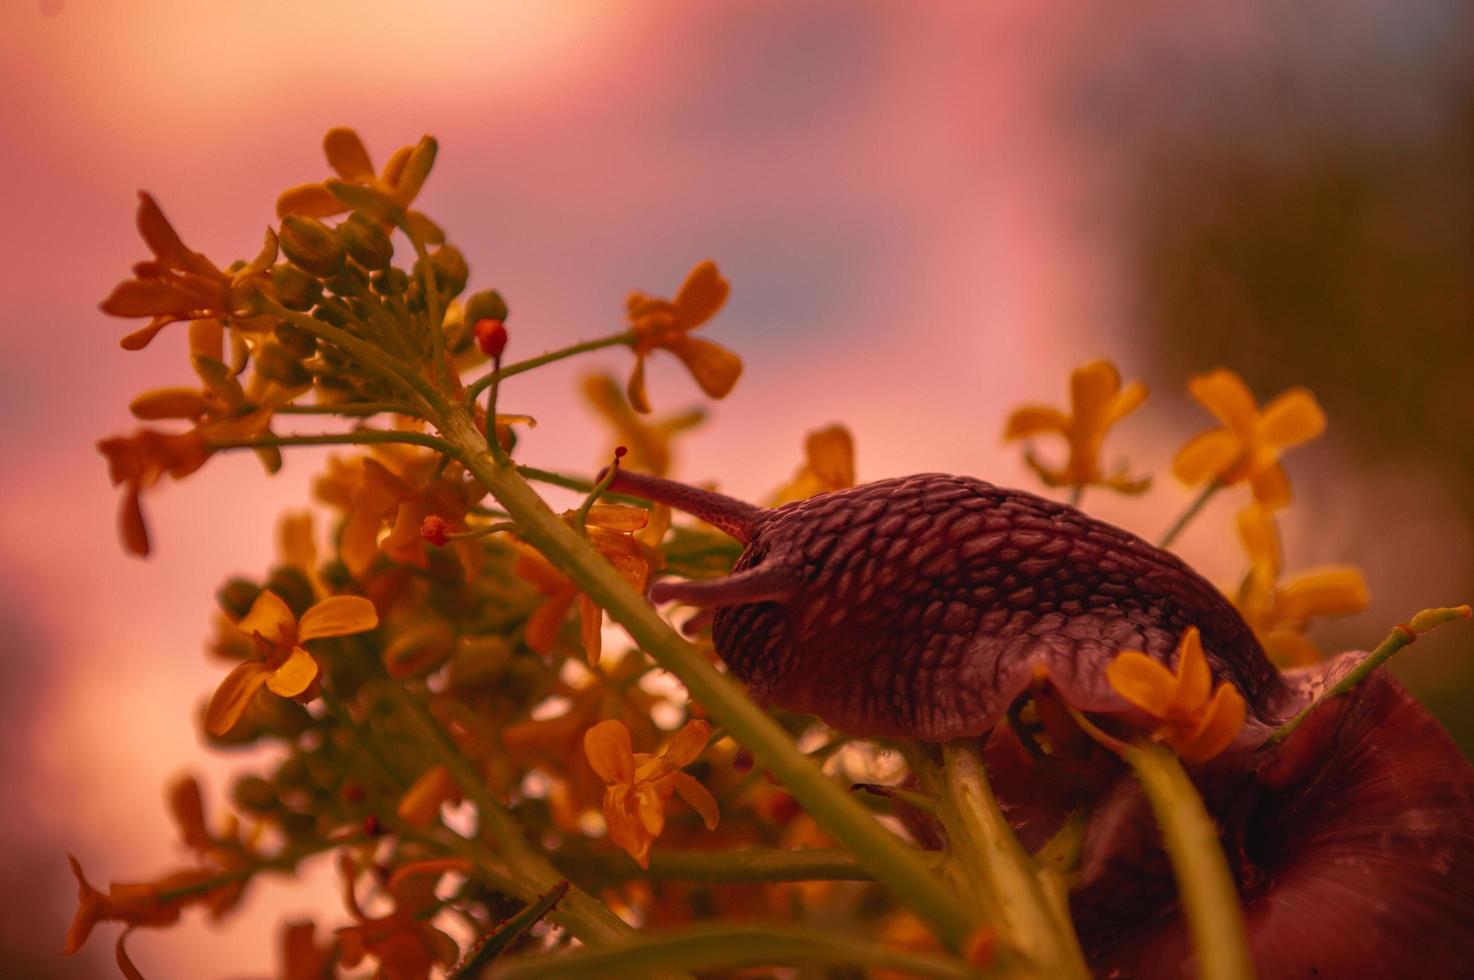 Burgunder Schnecke bei Sonnenuntergang in dunkelroten Farben und in einer natürlichen Umgebung foto